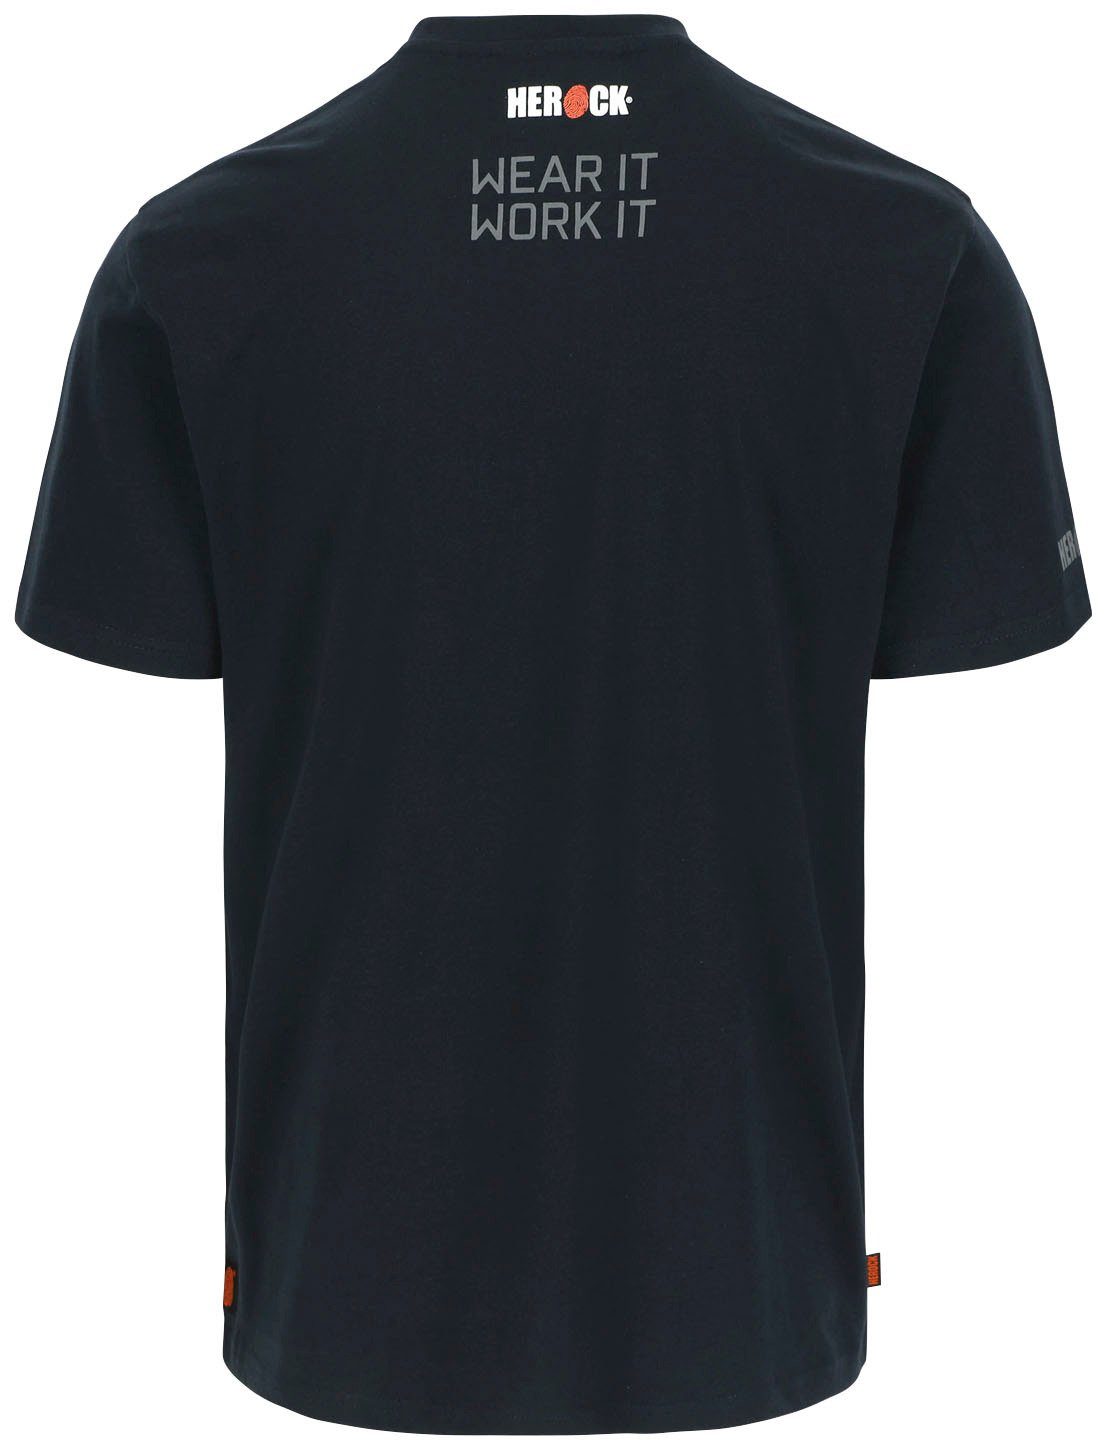 blau T-Shirt Ärmel, Rippstrickkragen Callius T-Shirt kurze kurze Ärmel Rundhalsausschnitt, Herock Herock®-Aufdruck,